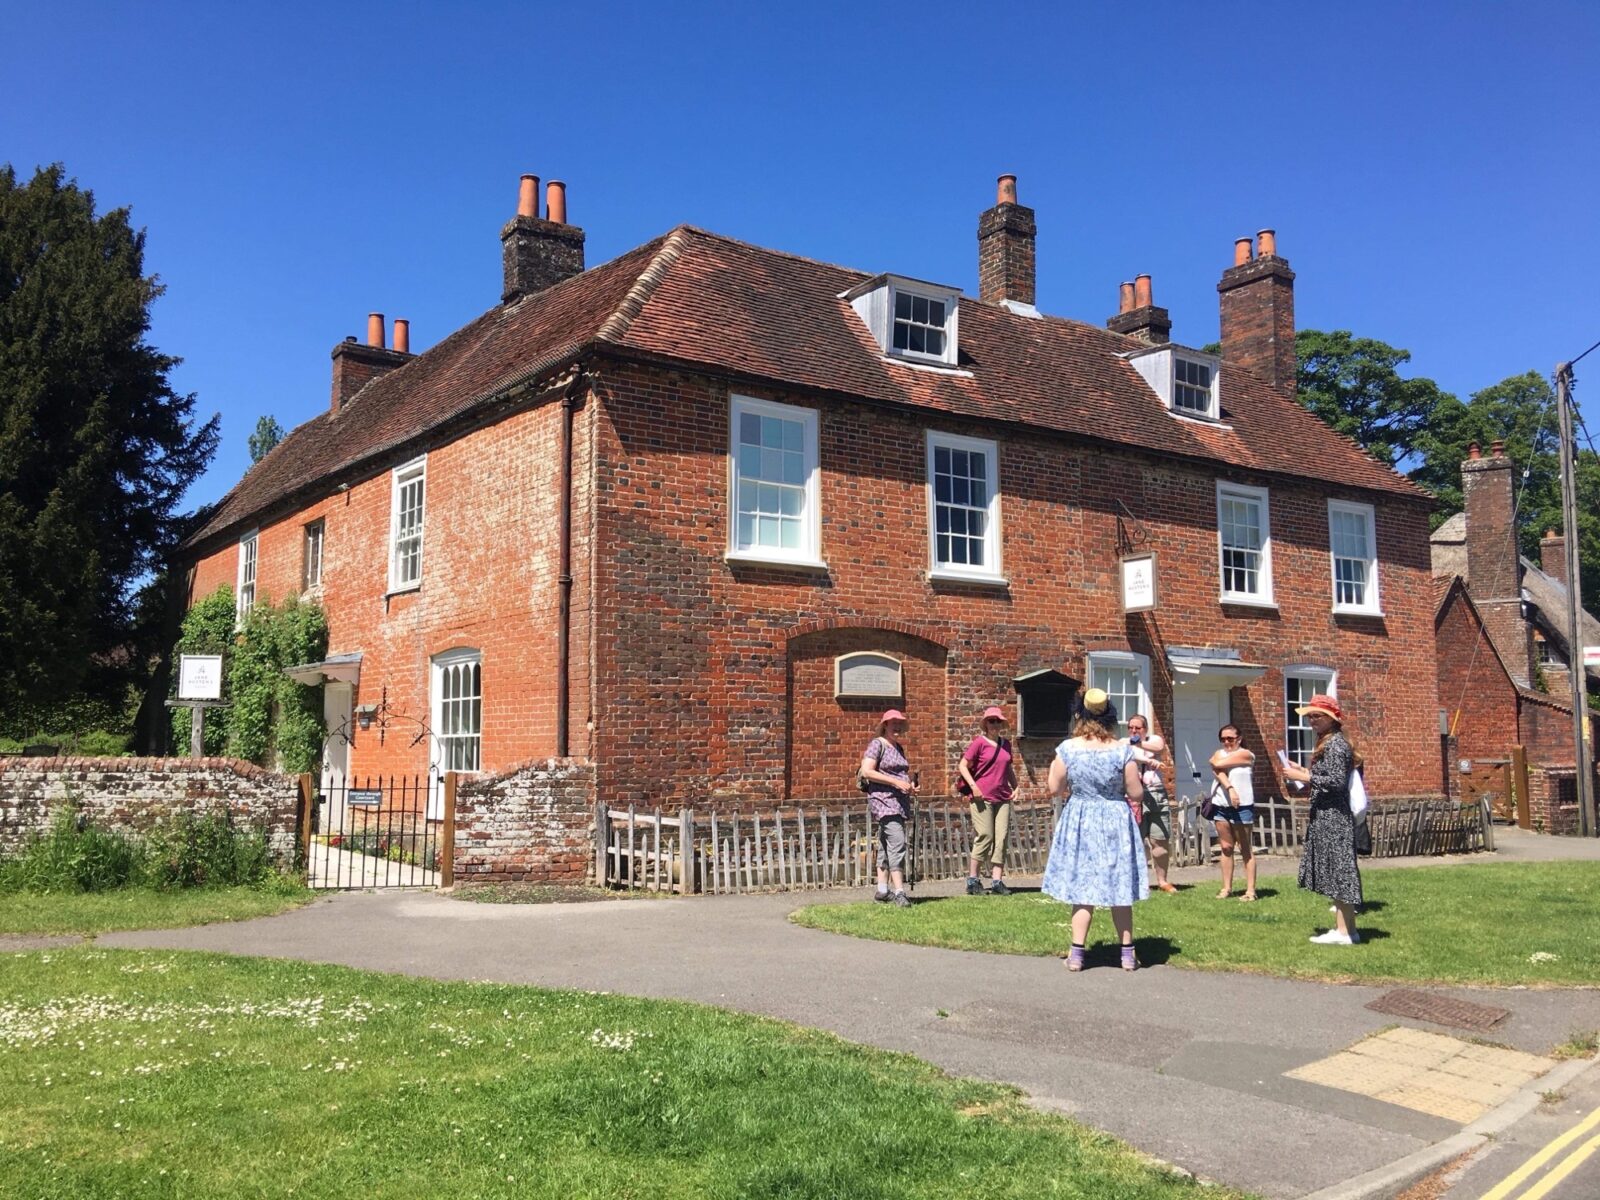 A Village Walk departs from Jane Austen's House